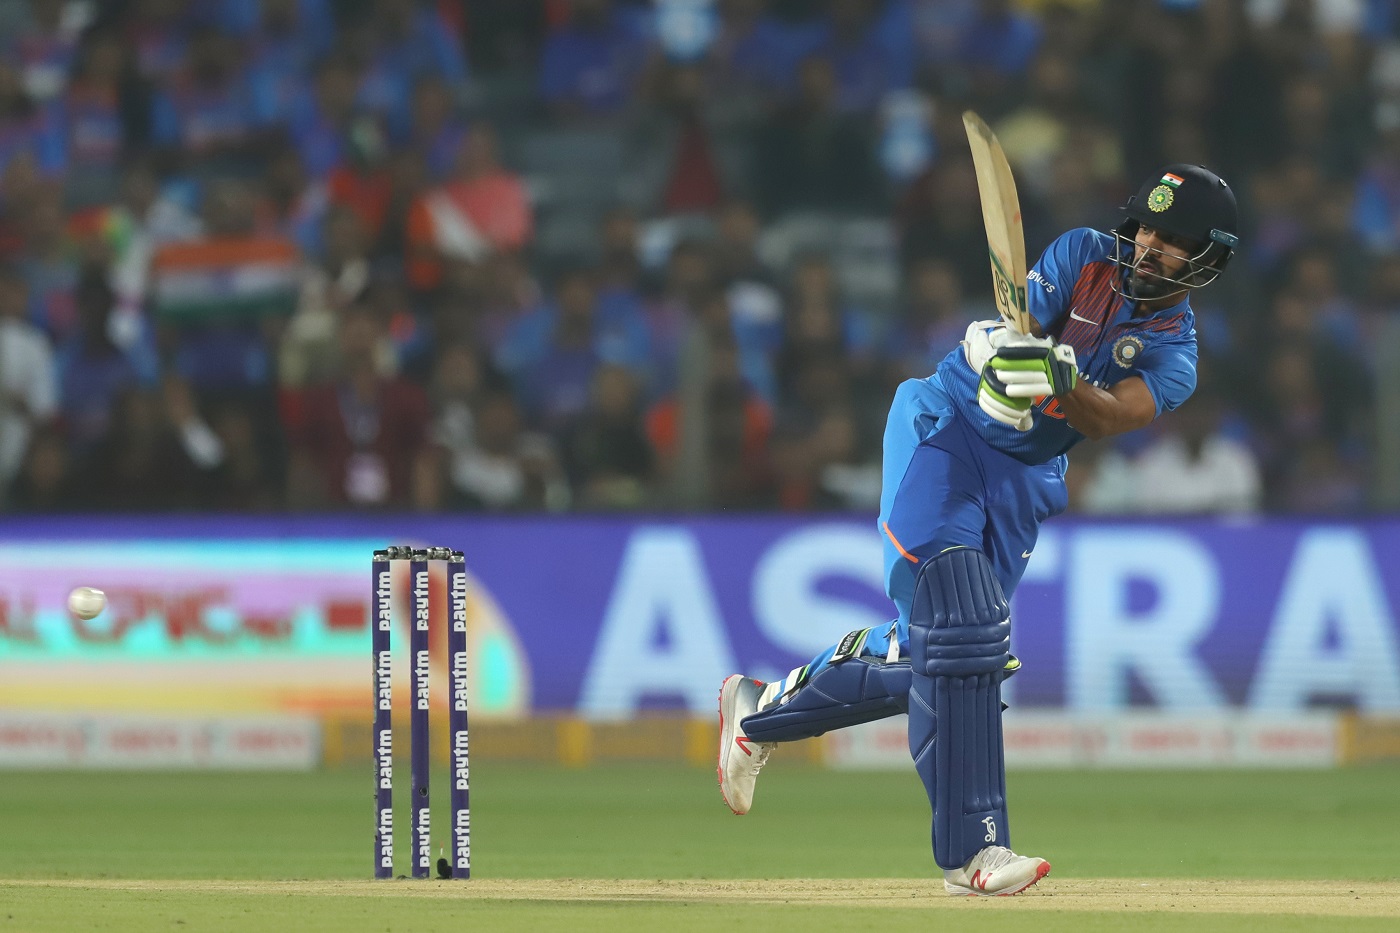 शिखर धवन - टीम इंडियाच्या गब्बरने 36चेंडूत दमदार अर्धशतकी खेळी केली. तो 52 धावांवर बाद झाला.